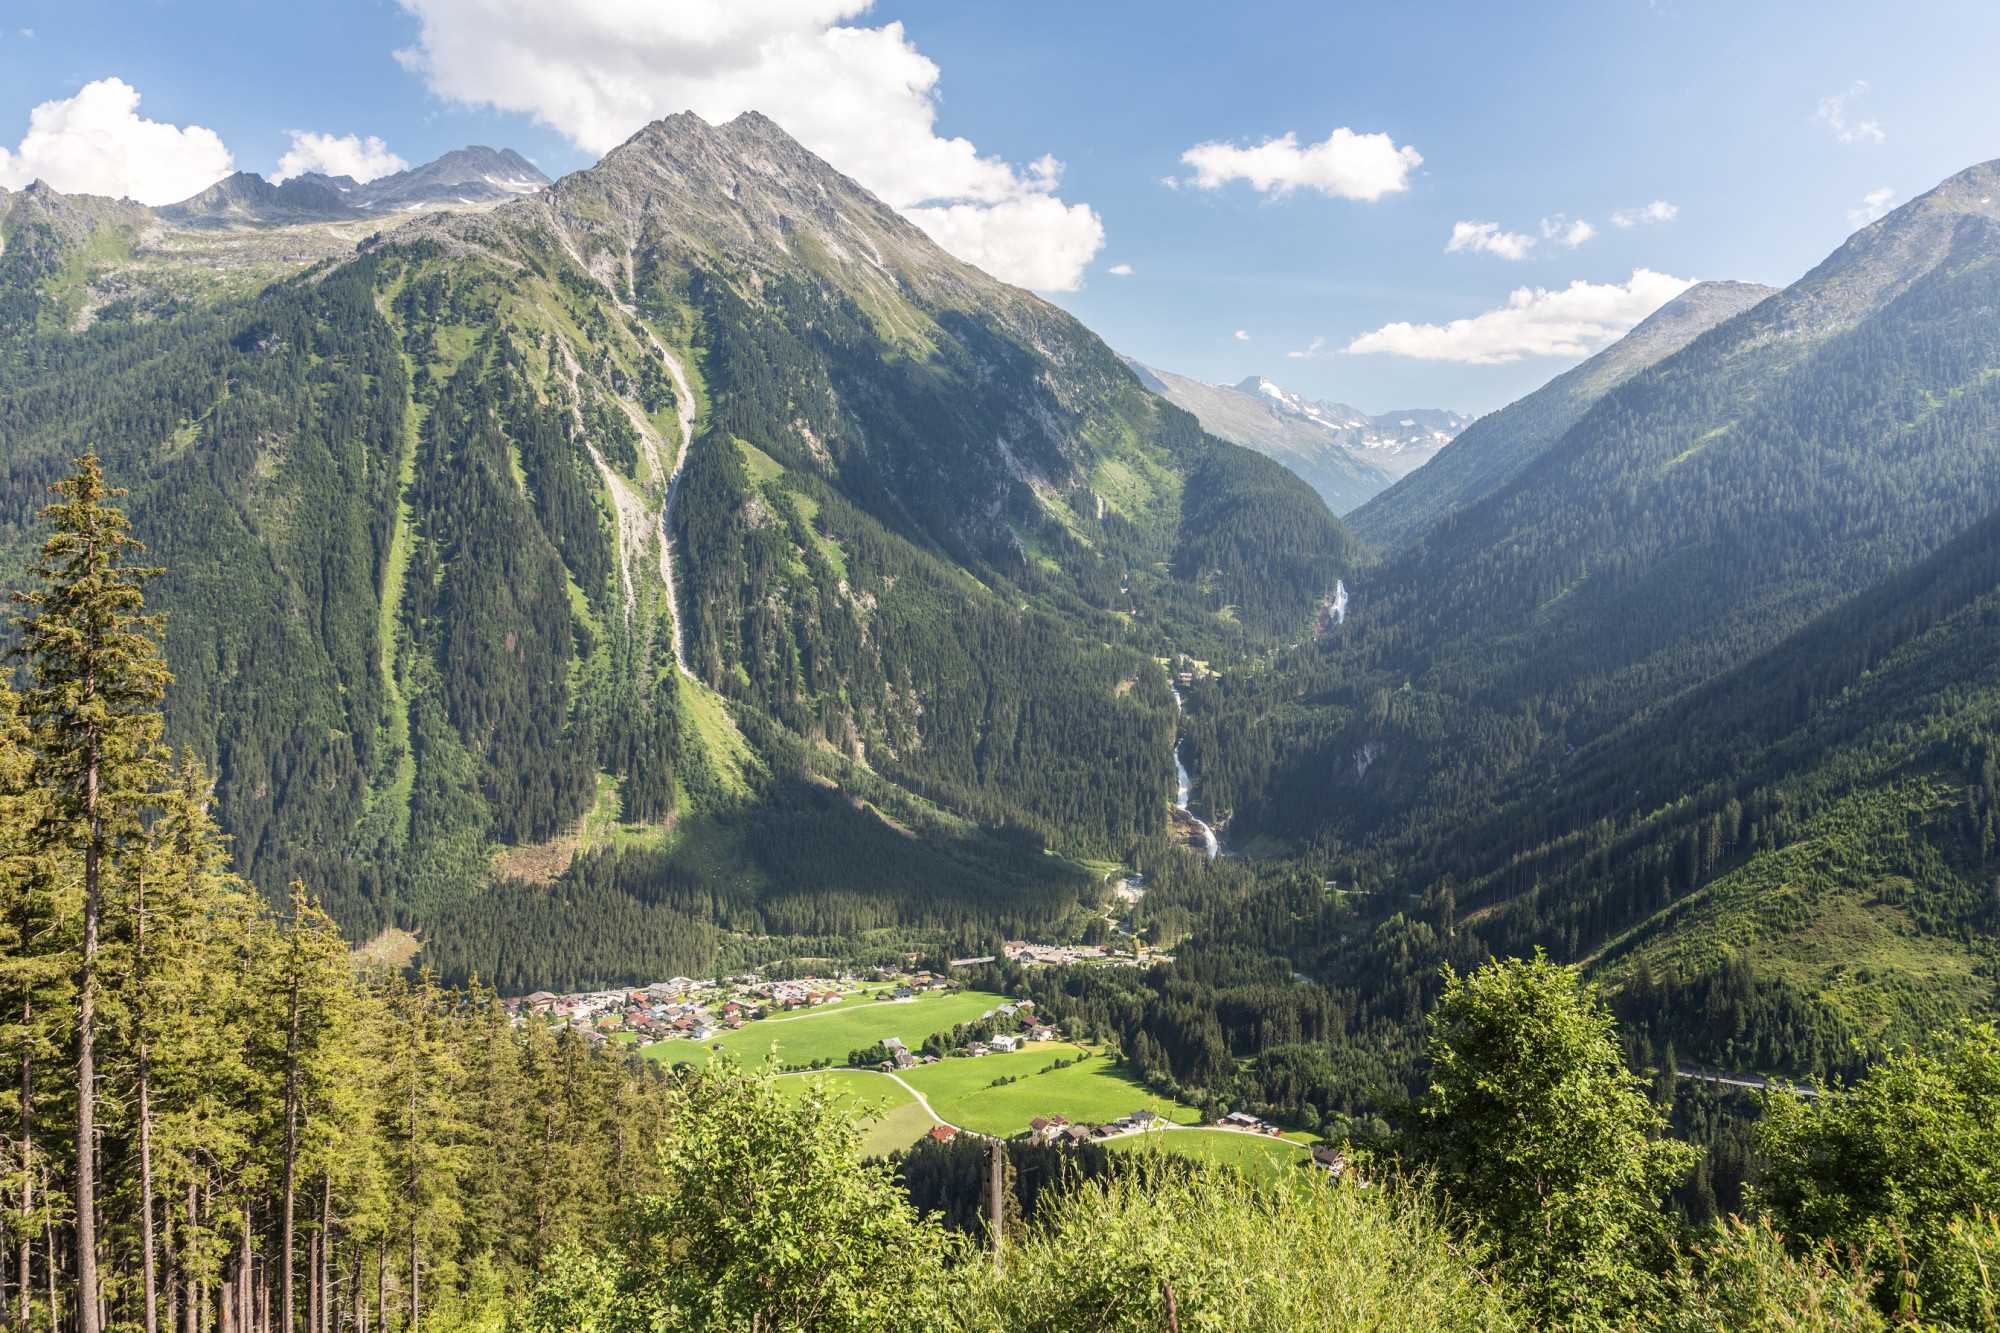 52 éve eltűnt ember maradványait találták meg túrázók az osztrák Alpokban